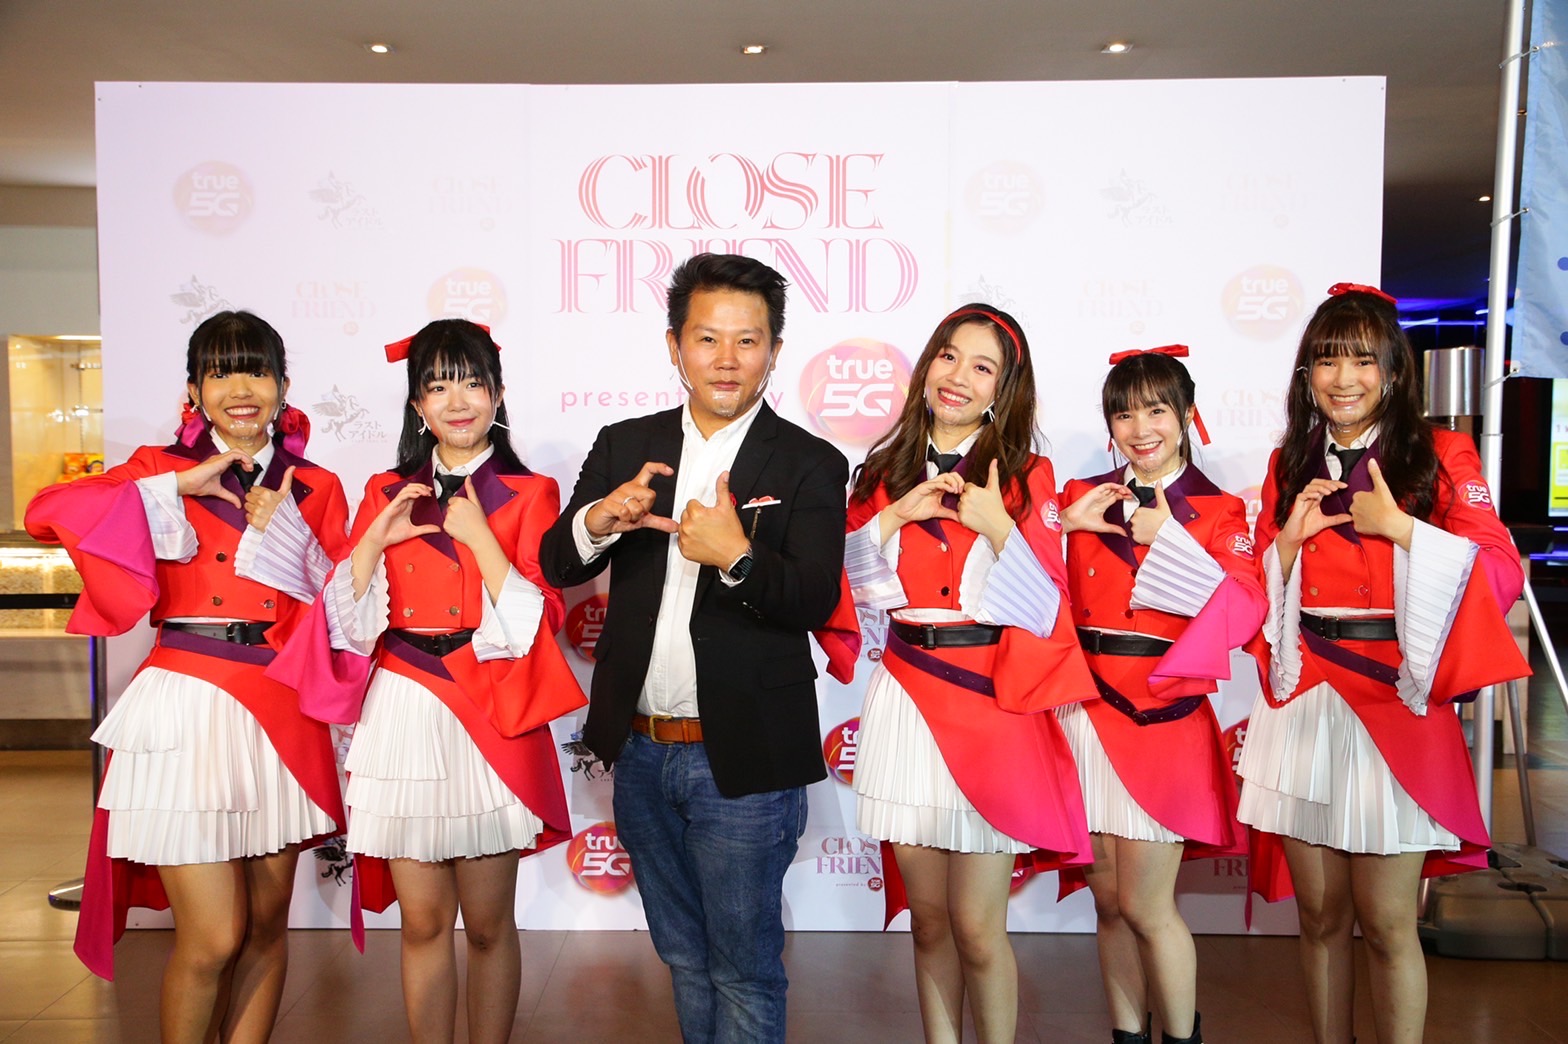 ทรู 5G ปั้น 5 สาว Last Idol Thailand จากพลังโหวต พร้อมเปิดตัว Close Friend presented by True 5G ของ True 5G Special Unit แจกความสดใส น่ารัก กับเพลงประจำยูนิต “รักที่แท้ทรู